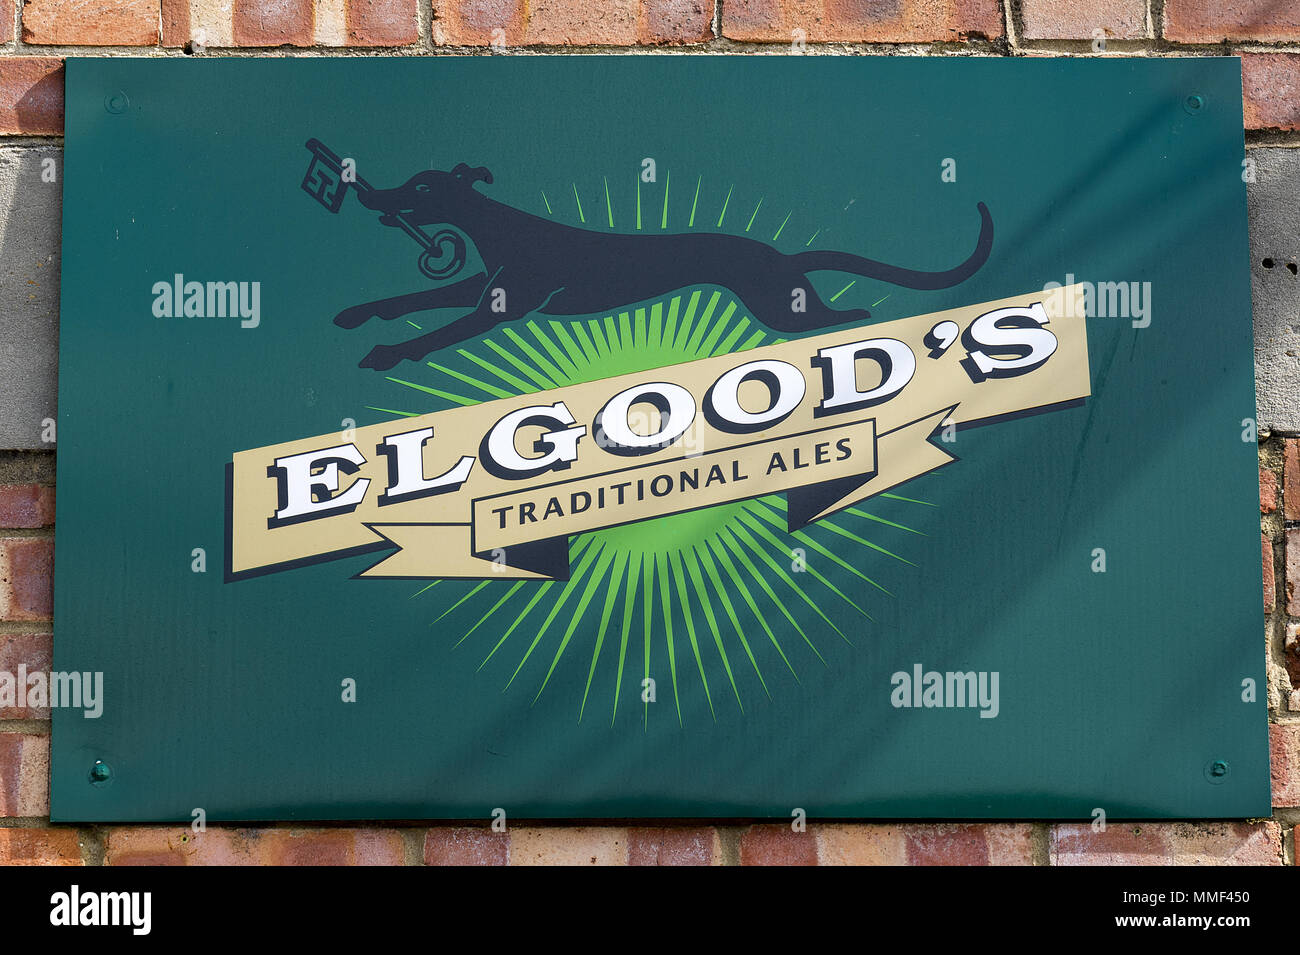 Elgood's Brauerei Emaille Schild zeigt das Black Dog Marke Abbildung. Wisbech, Cambridgeshire, England. Hersteller von traditionellen Ales. Stockfoto